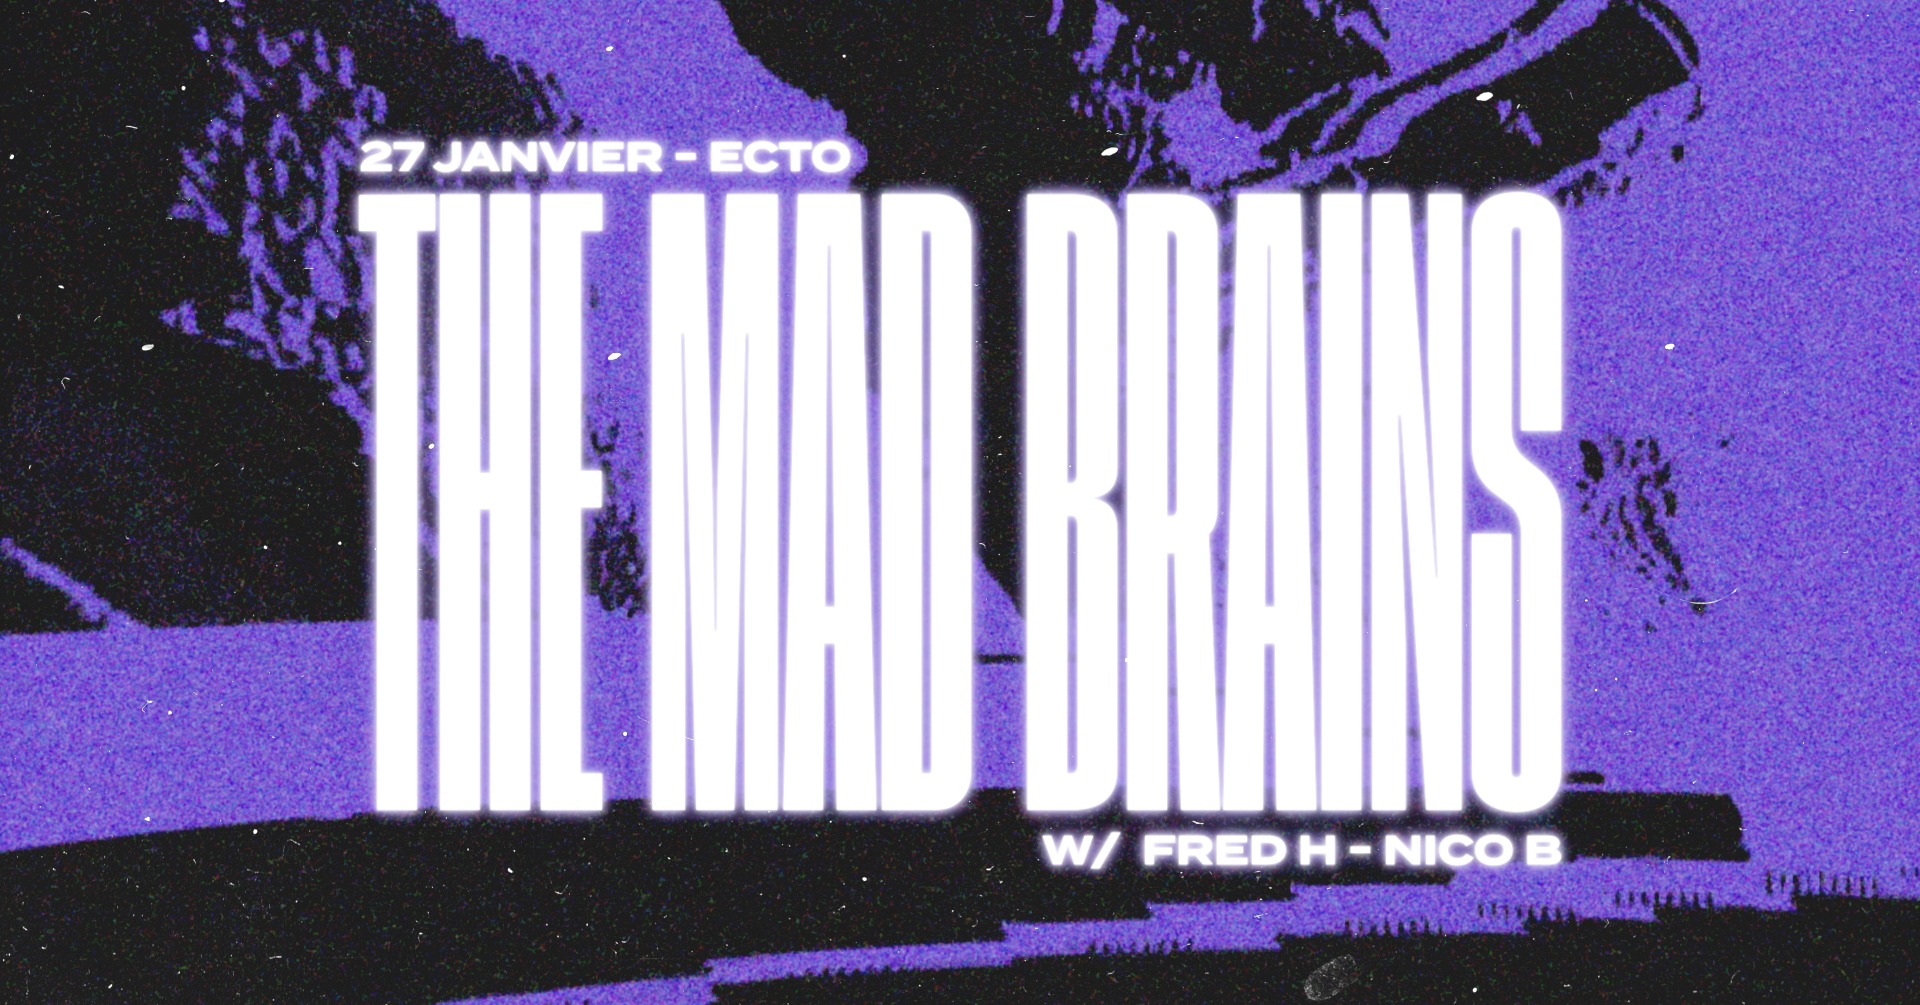 Ecto x M.A.D Brains, évènement propulsé par M.A.D Brains, qui aura lieu le 26 jan 2023